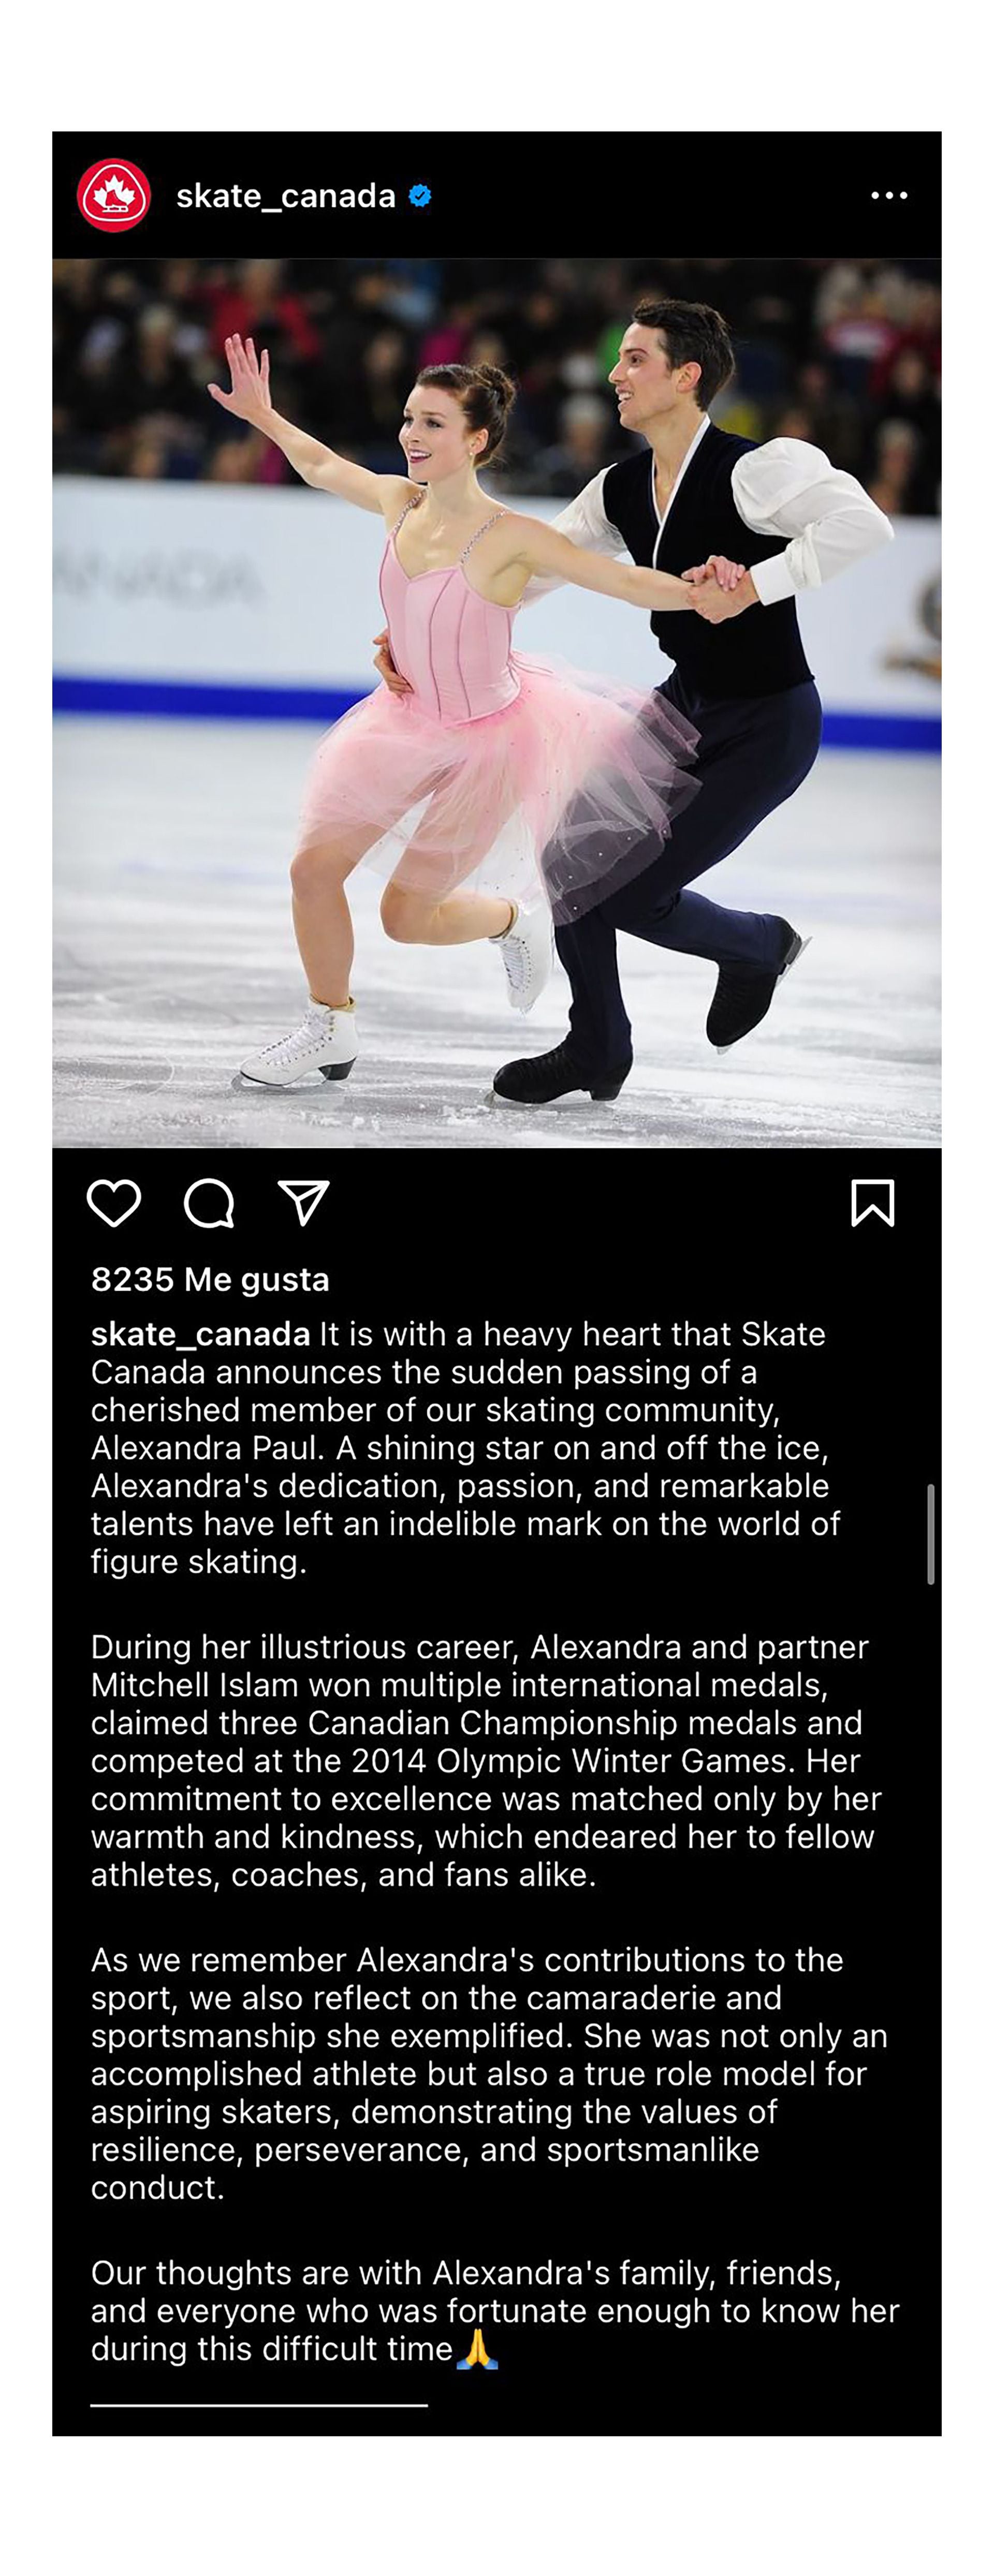 El emotivo posteo de Skate Canada 